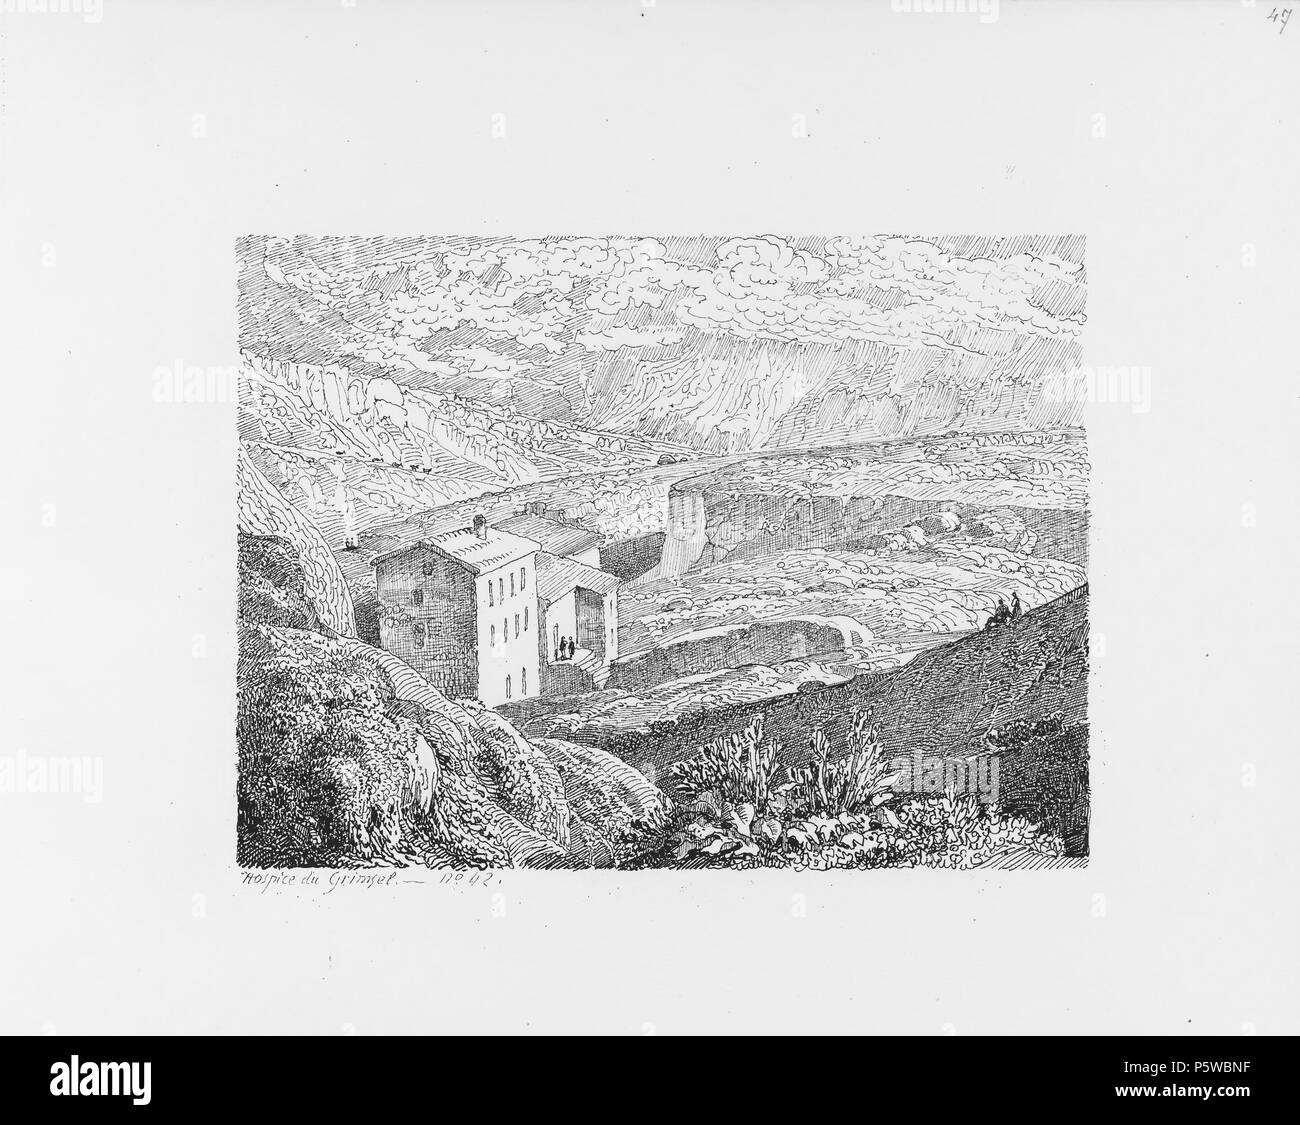 322 CH-NB-Voyage autour du Mont-Blanc dans les vallées d'Hérens de Zermatt et au Grimsel 1843-nbdig-19161-048 Stock Photo